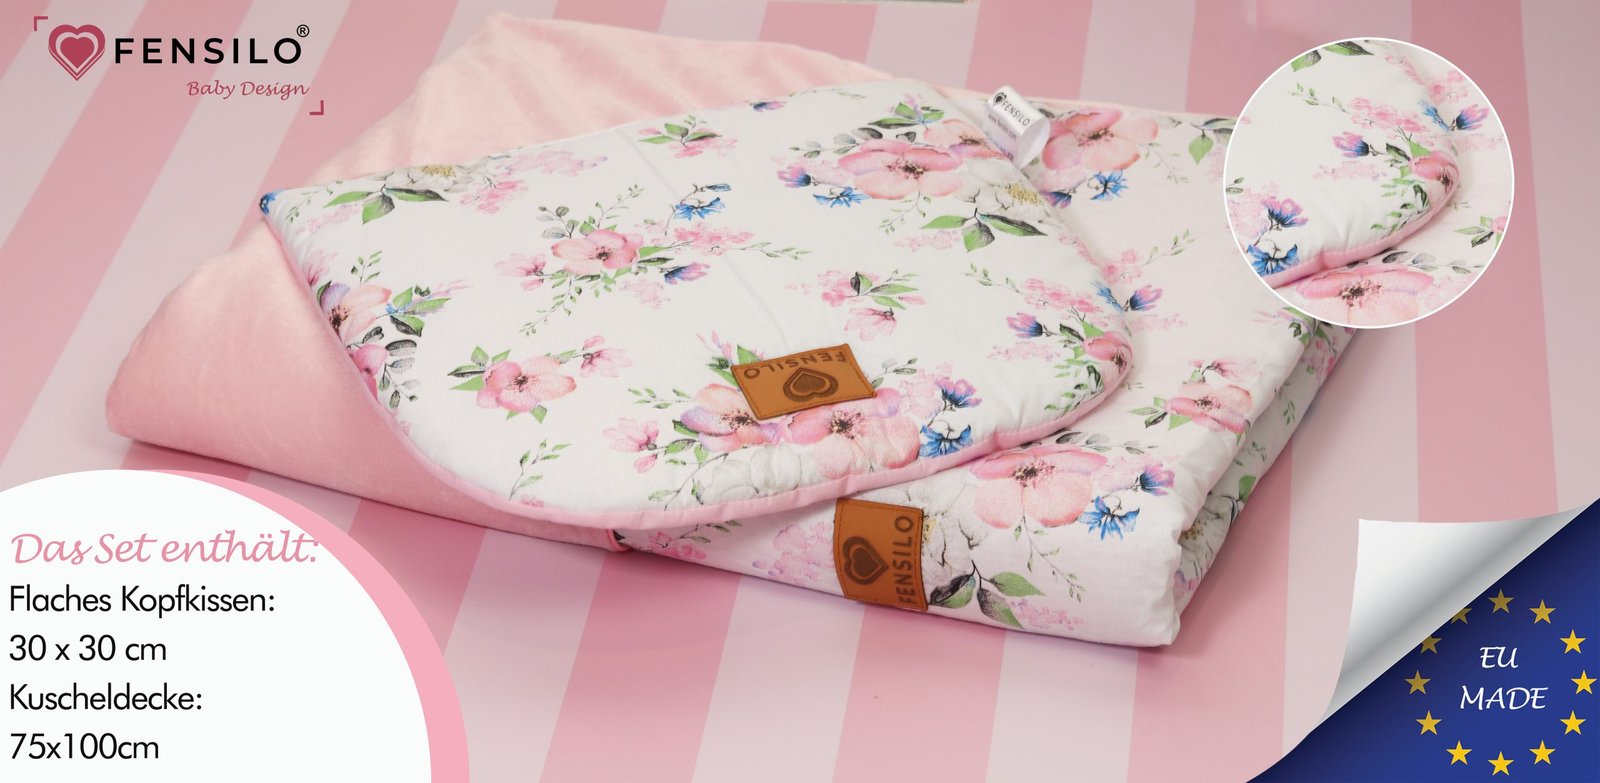 FENSILO – Baby Bettdecke und Kissen – Zweiseitige Steppdecke  Kuscheldecke – Schlafdecke für Neugeborene  Babybett, Kinderwagen oder auf Reisen – 100 x 75cm, rosa und weiße Decke mit Blumen